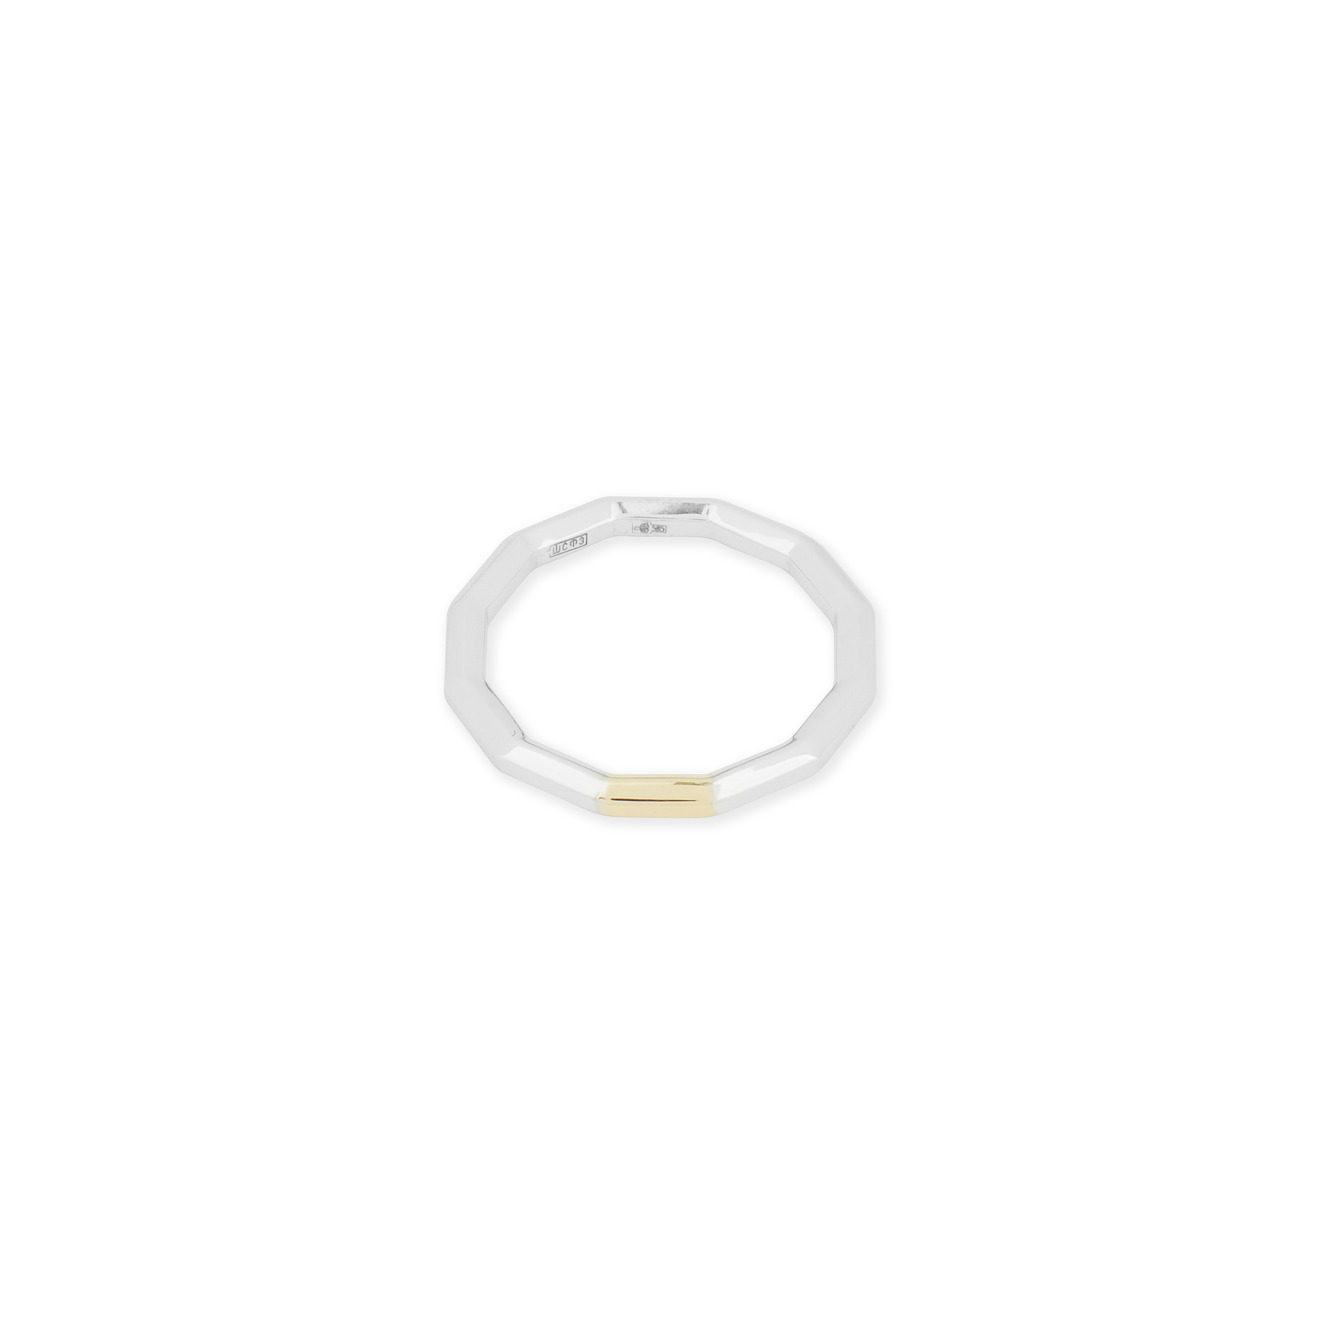 Avgvst Обручальное кольцо из золота Double Gold с сегментом из лимонного золота avgvst кольцо арка среднее из белого золота